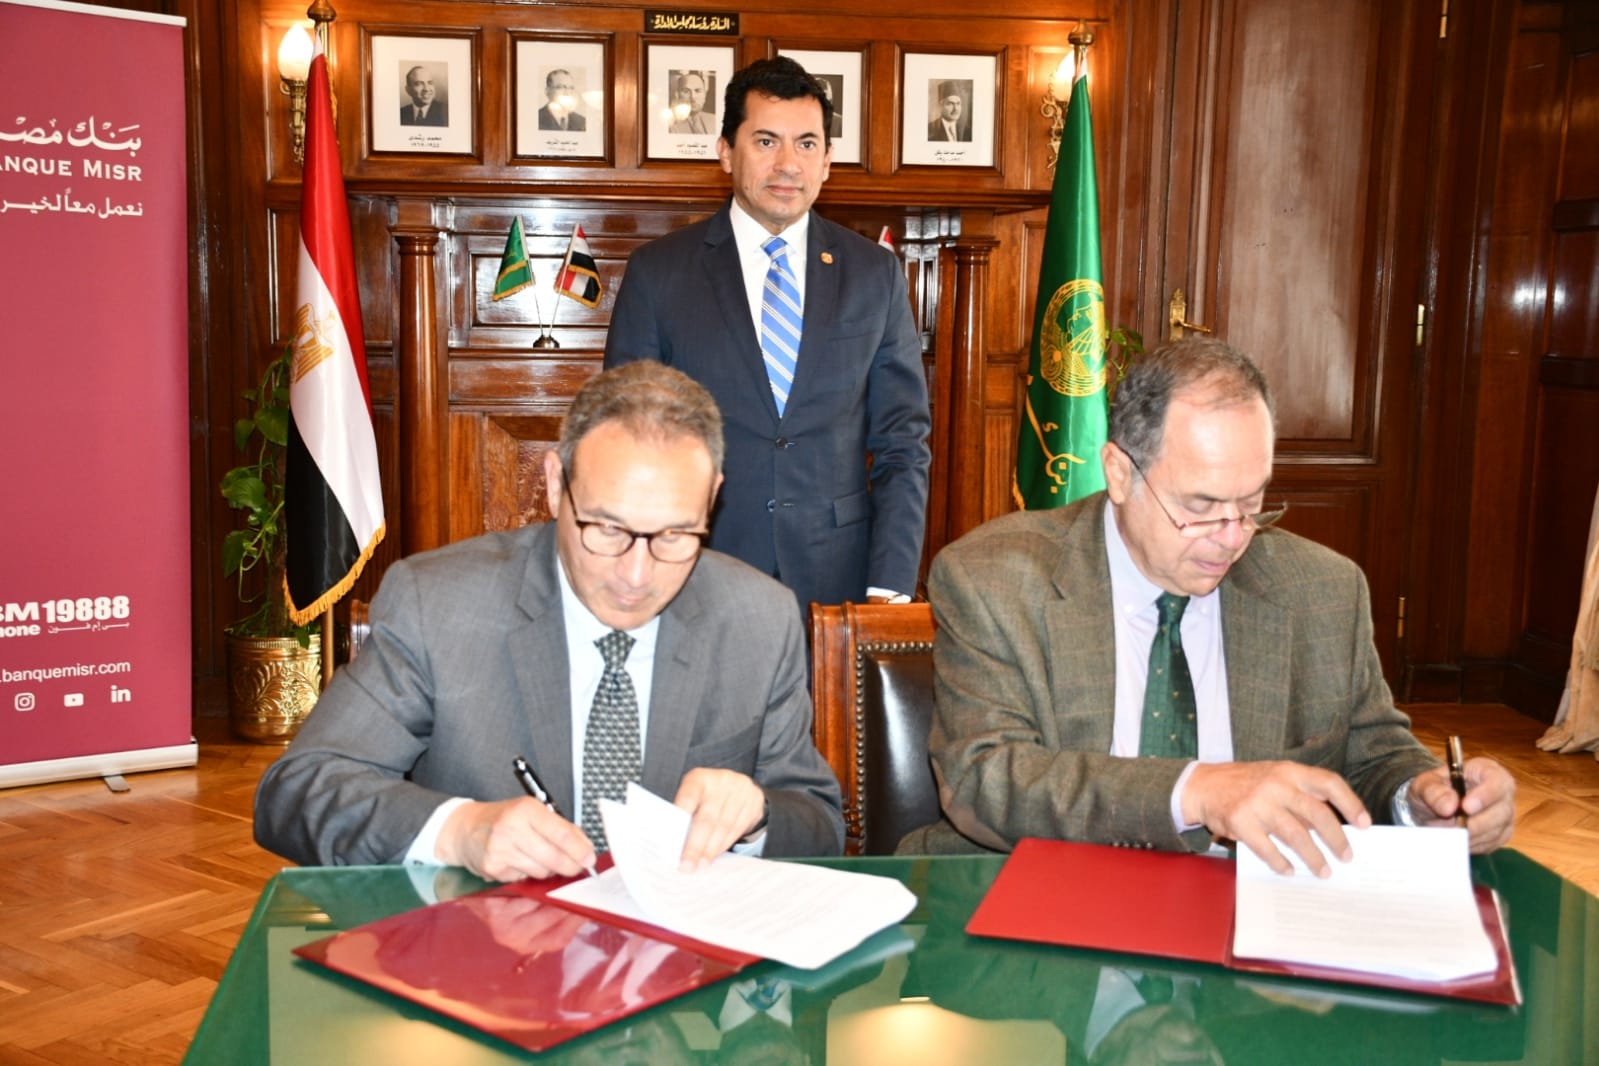 وزير الرياضة يشهد توقيع بروتوكول تعاون بين بنك مصر والاتحاد المصرى للتنس لرعاية الاتحاد 